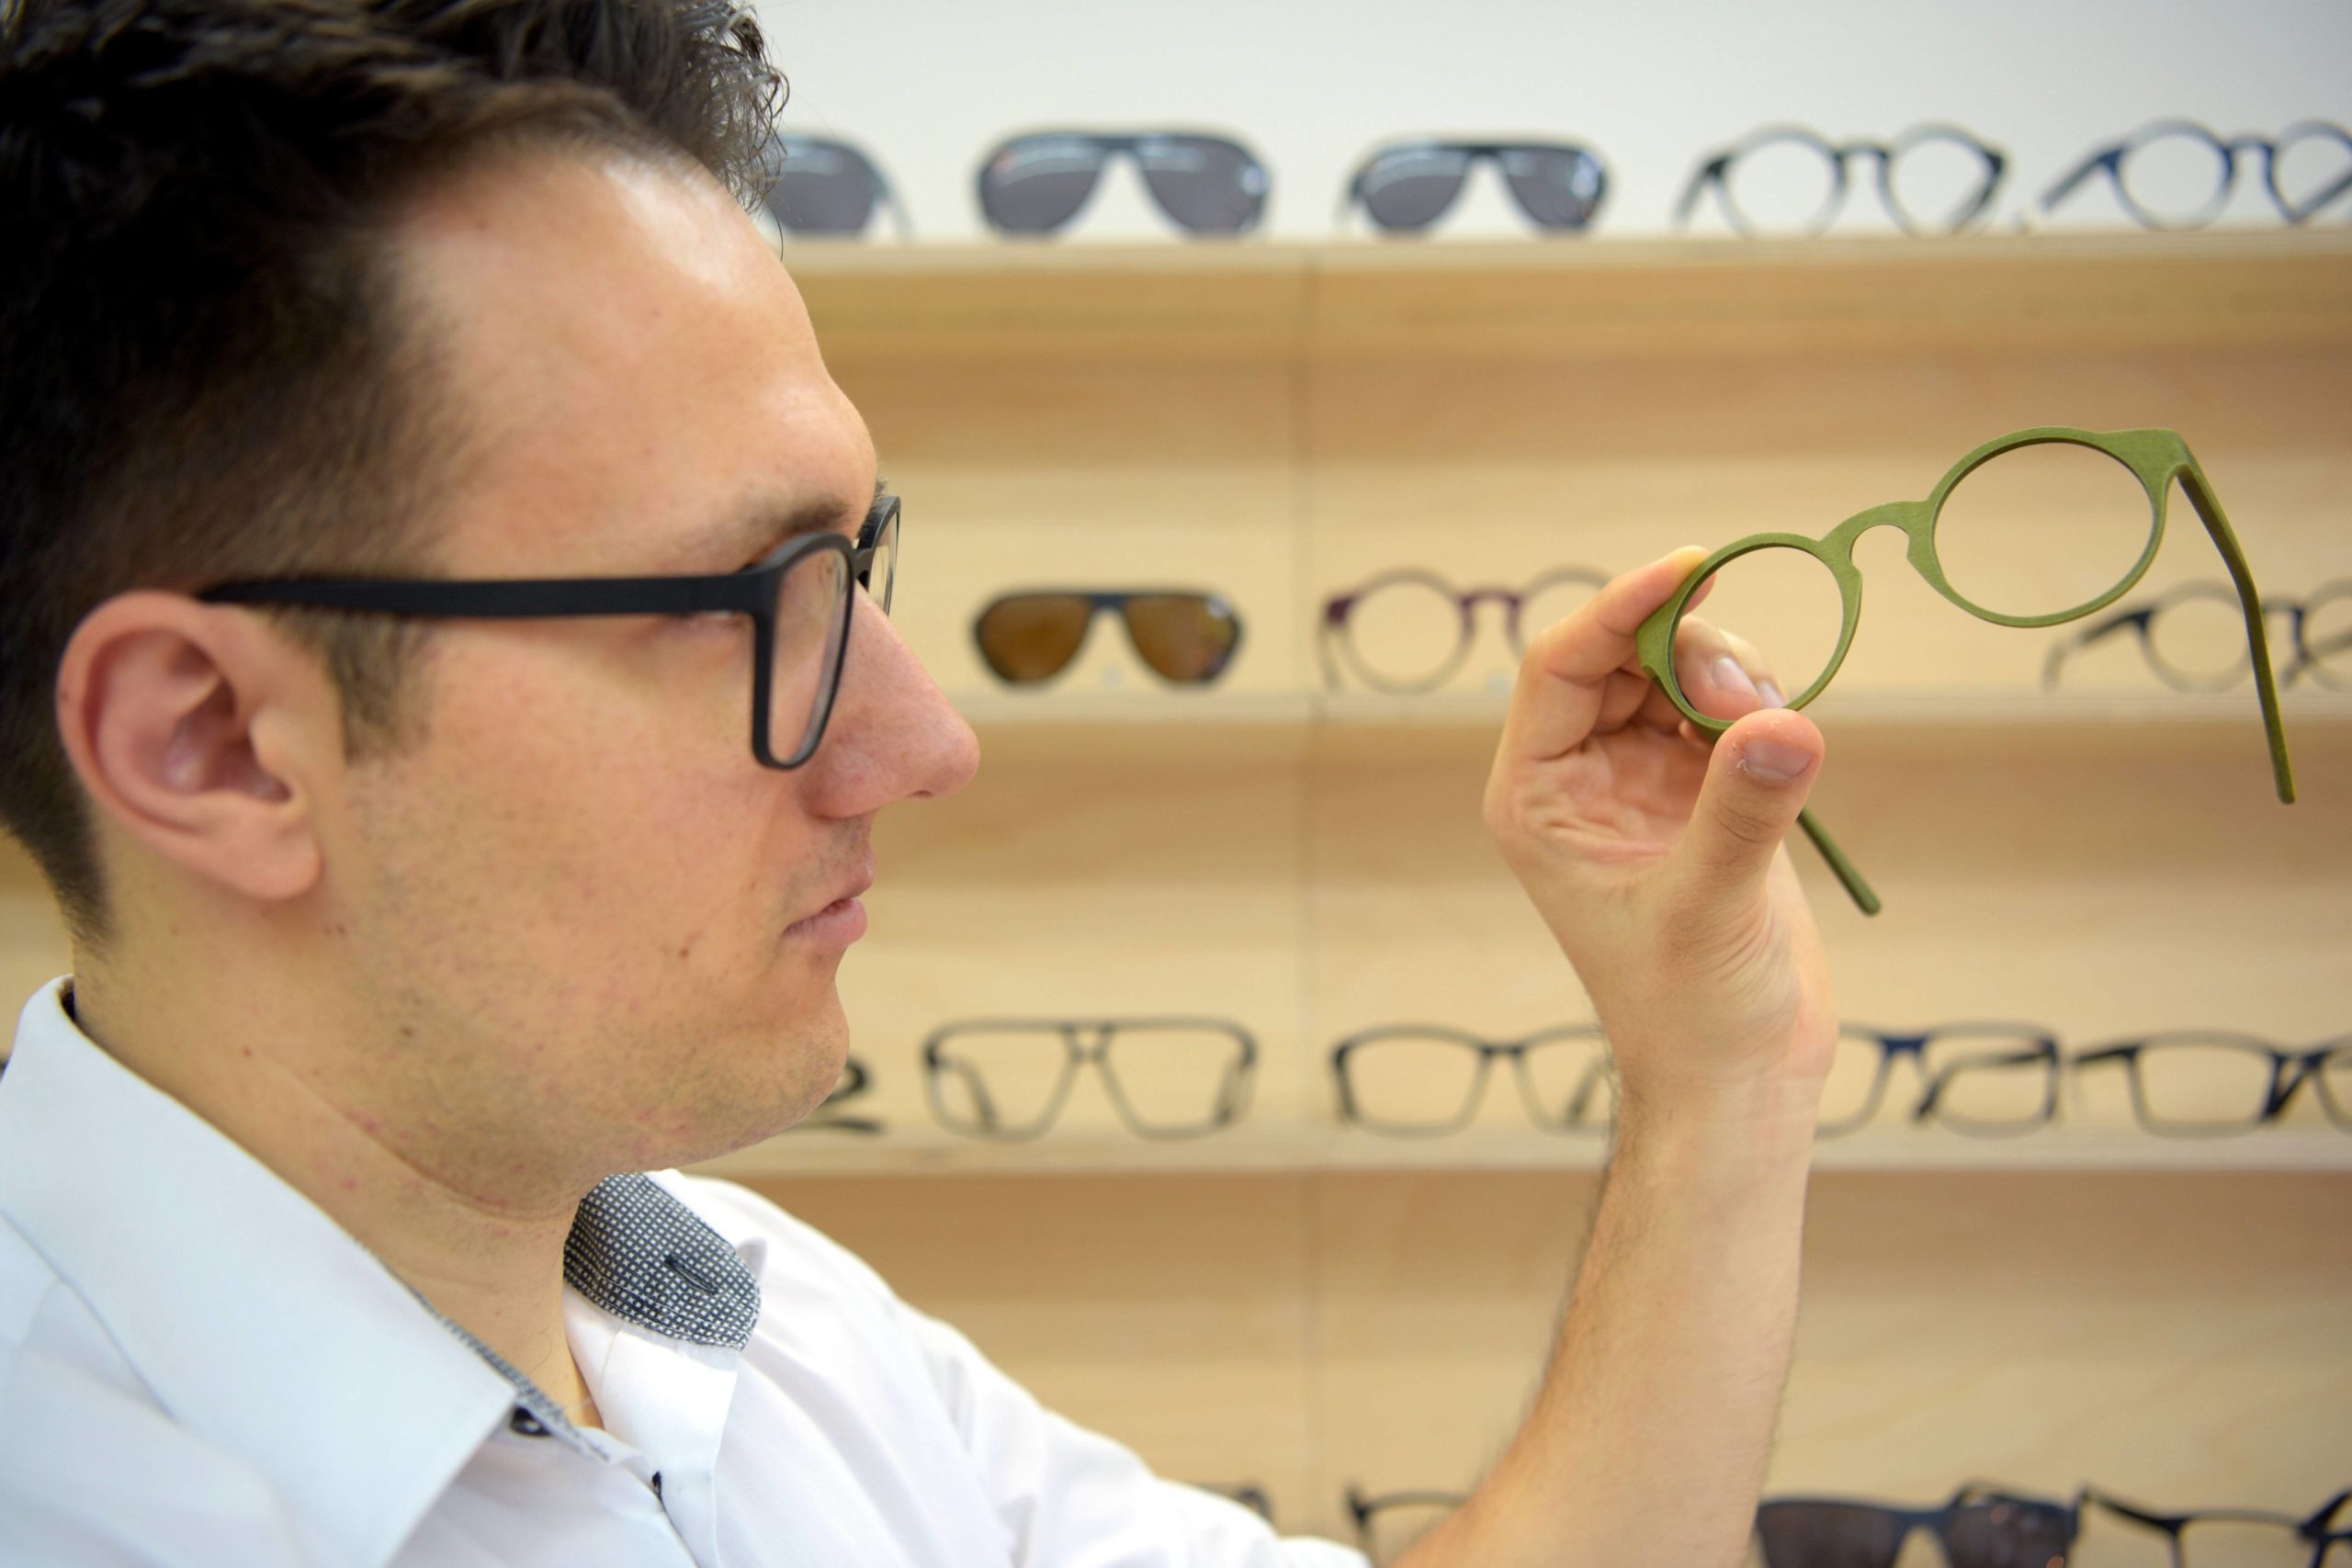 Sonnenbrille kaufen Berlin Framepunk in Kreuzberg führt ausgewählte Markensonnenbrillen und fertigt auf Wunsch individuelle Brillen an.